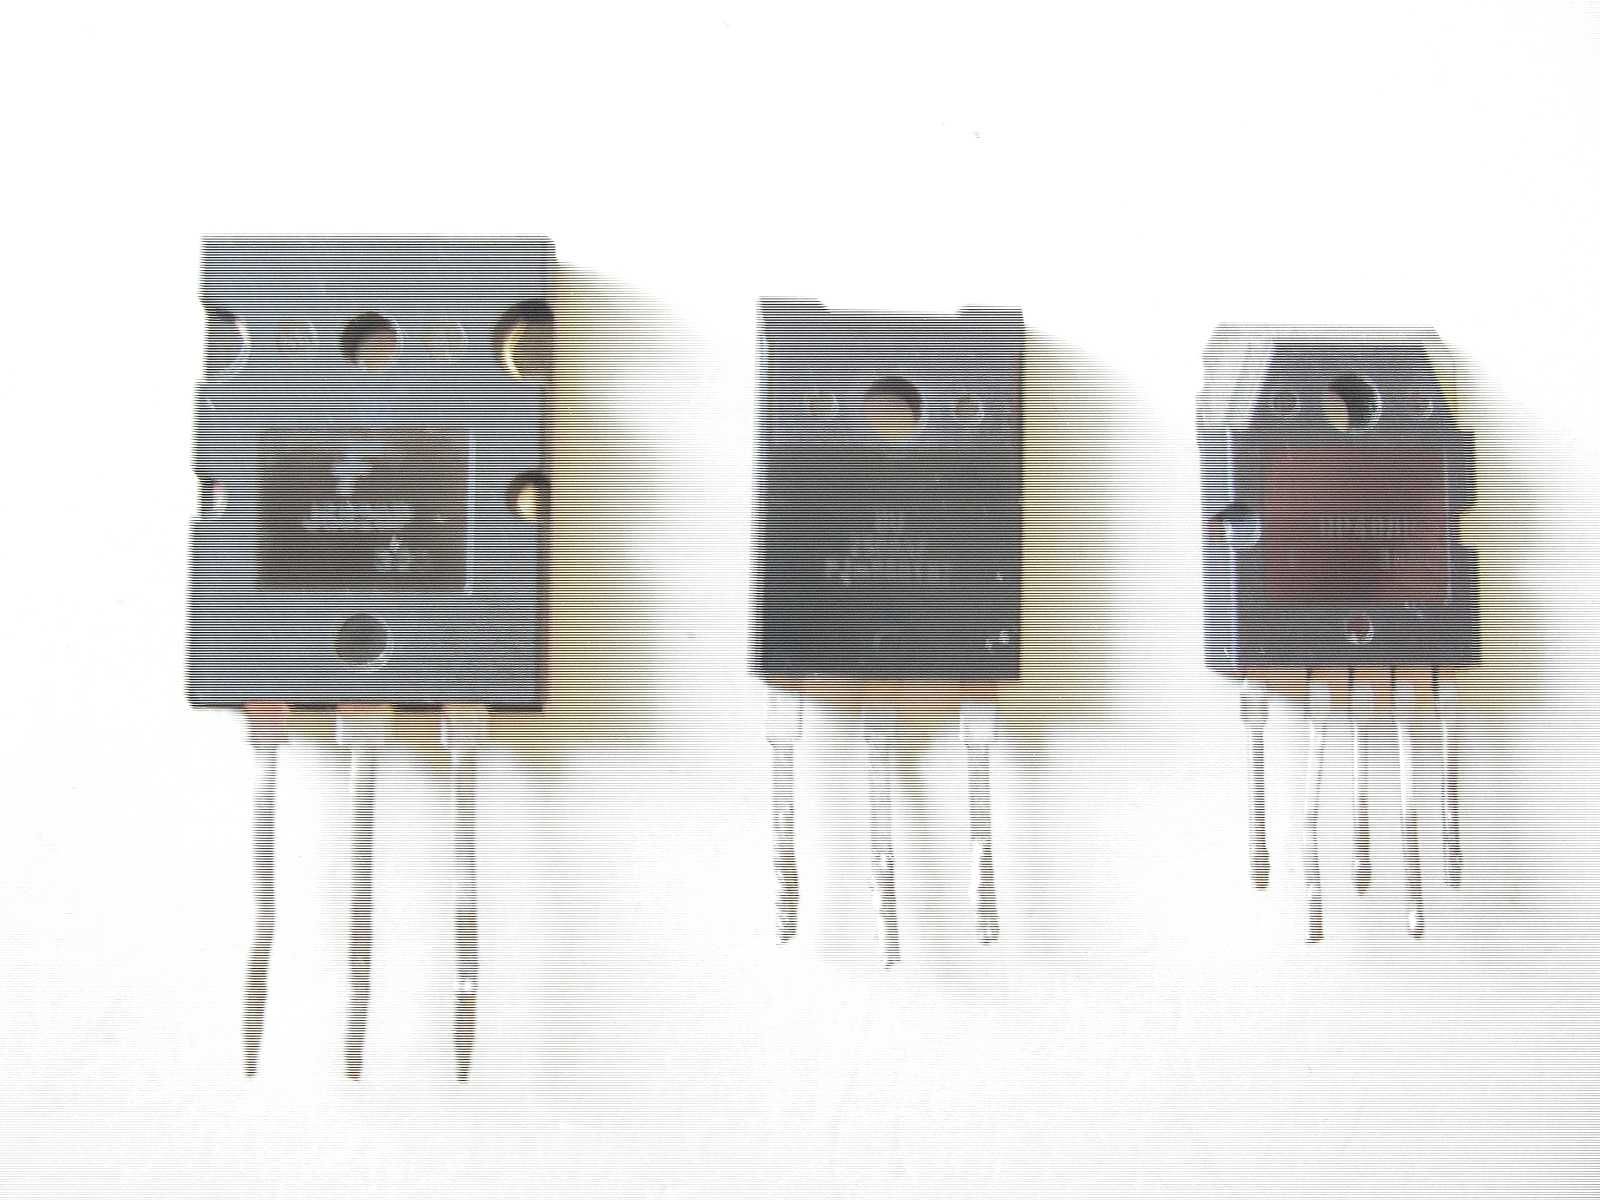 транзистор J6820P 1500V.   BU 2508 AF  700V  8A  45W.   DP 408P  и др.